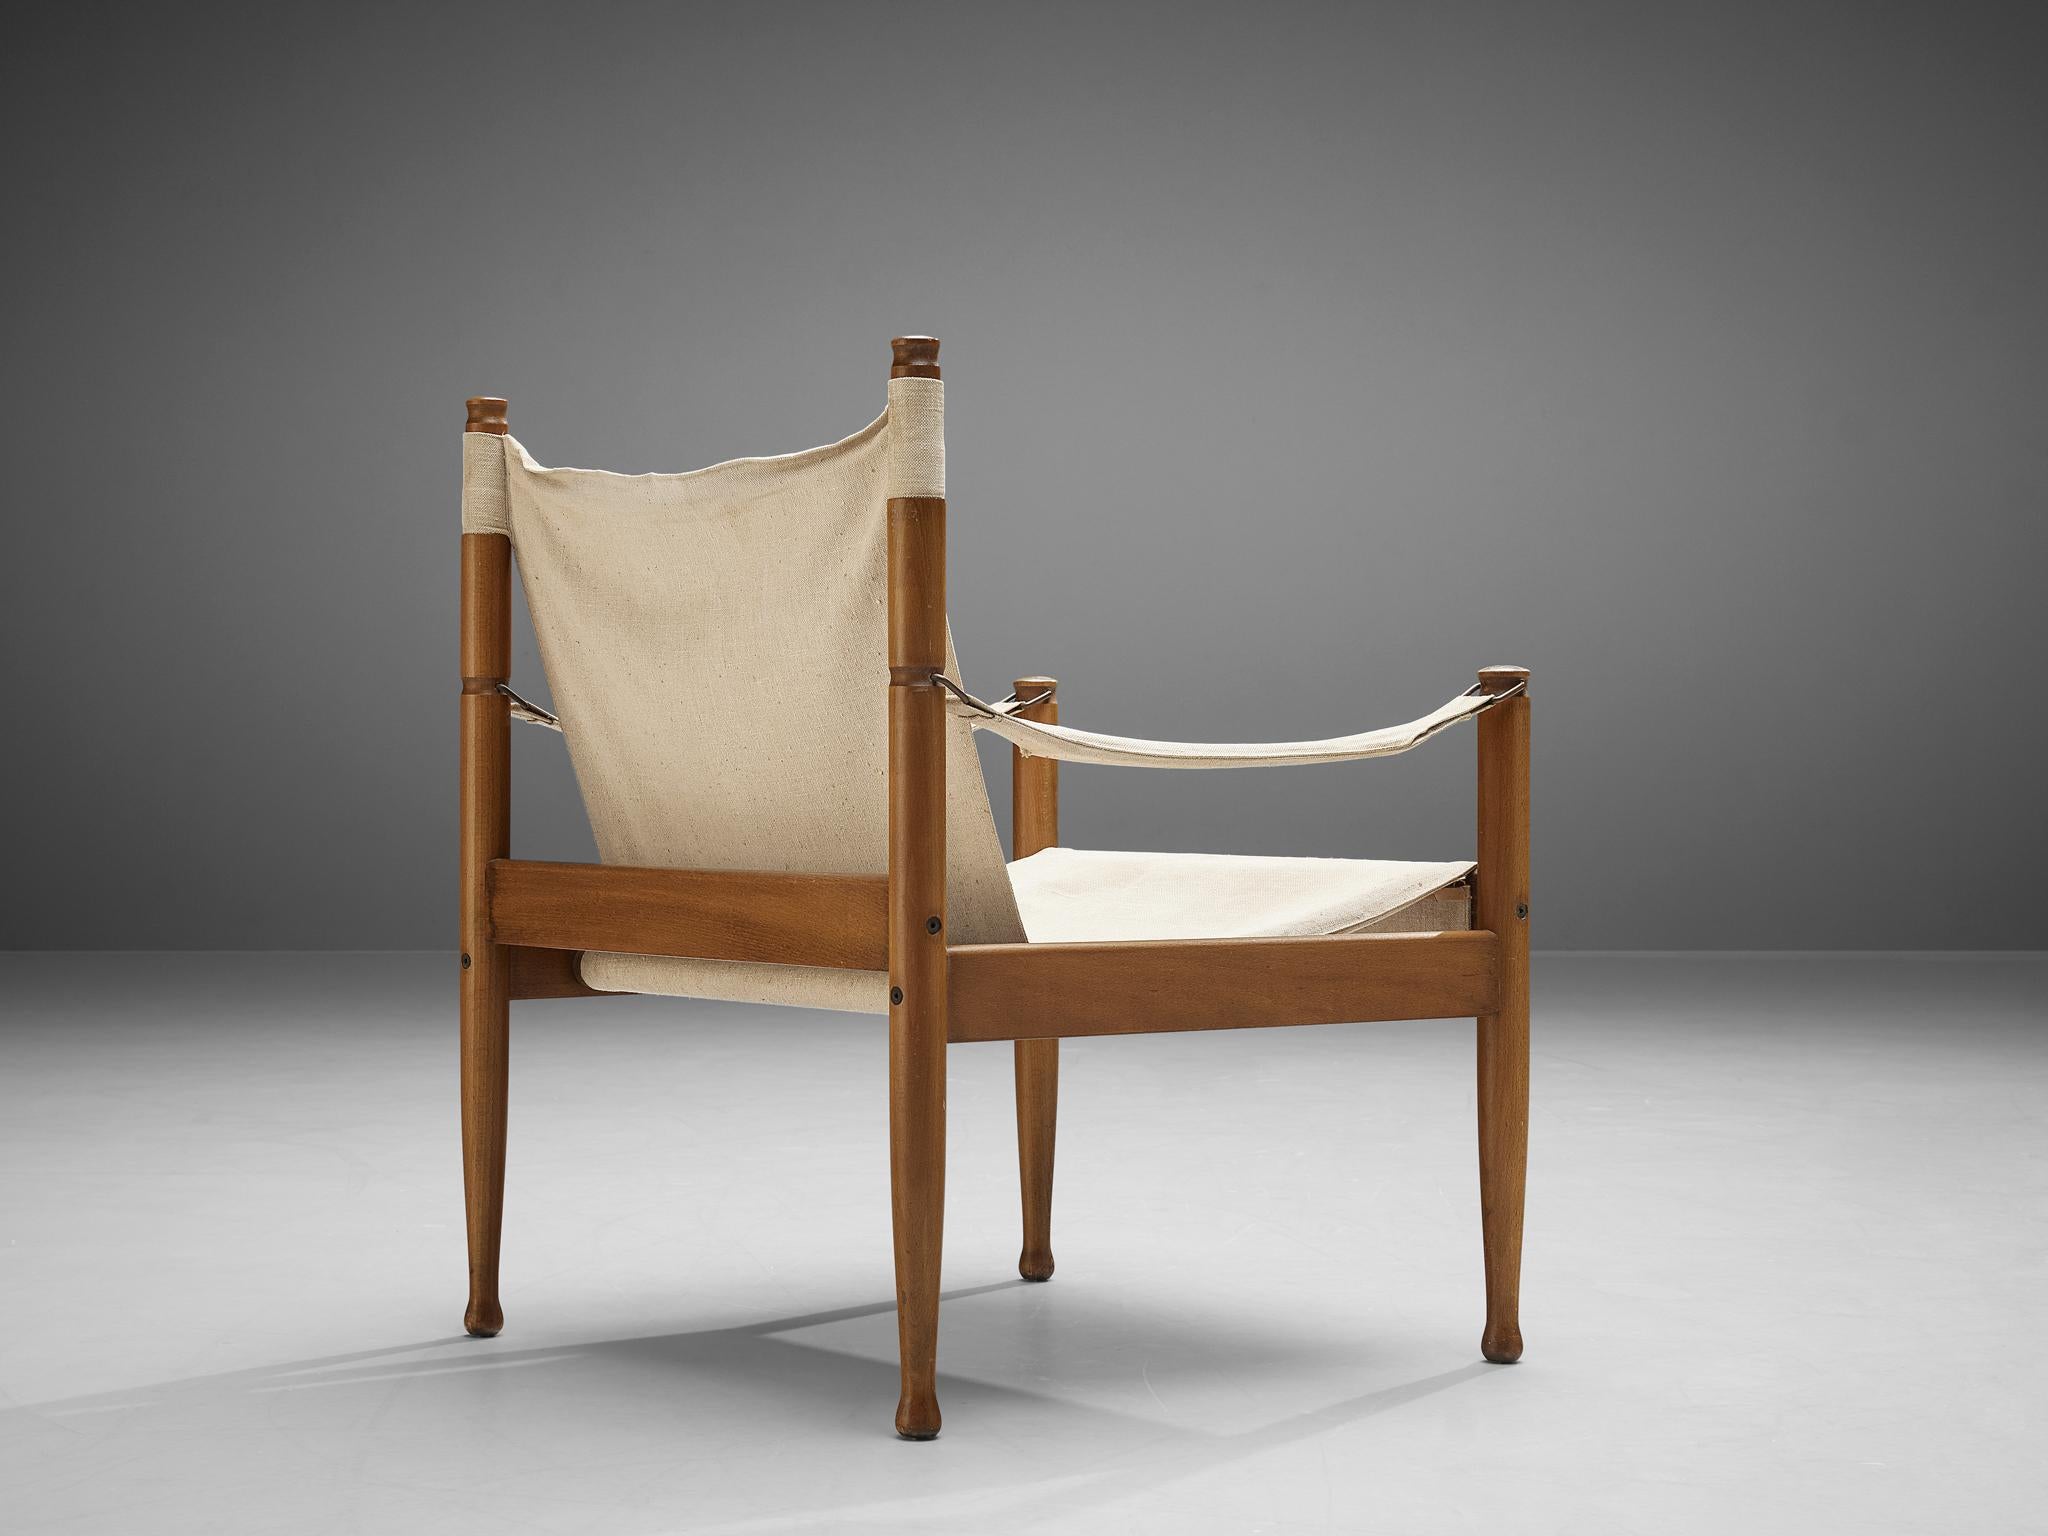 Erik Wørts pour Niels Beeche, chaise safari, hêtre teinté, toile, Danemark, années 1960 

Cette chaise longue robuste aux détails raffinés est conçue par le designer danois Erik Wørts. Le fauteuil safari a une expression sincère et harmonieuse grâce